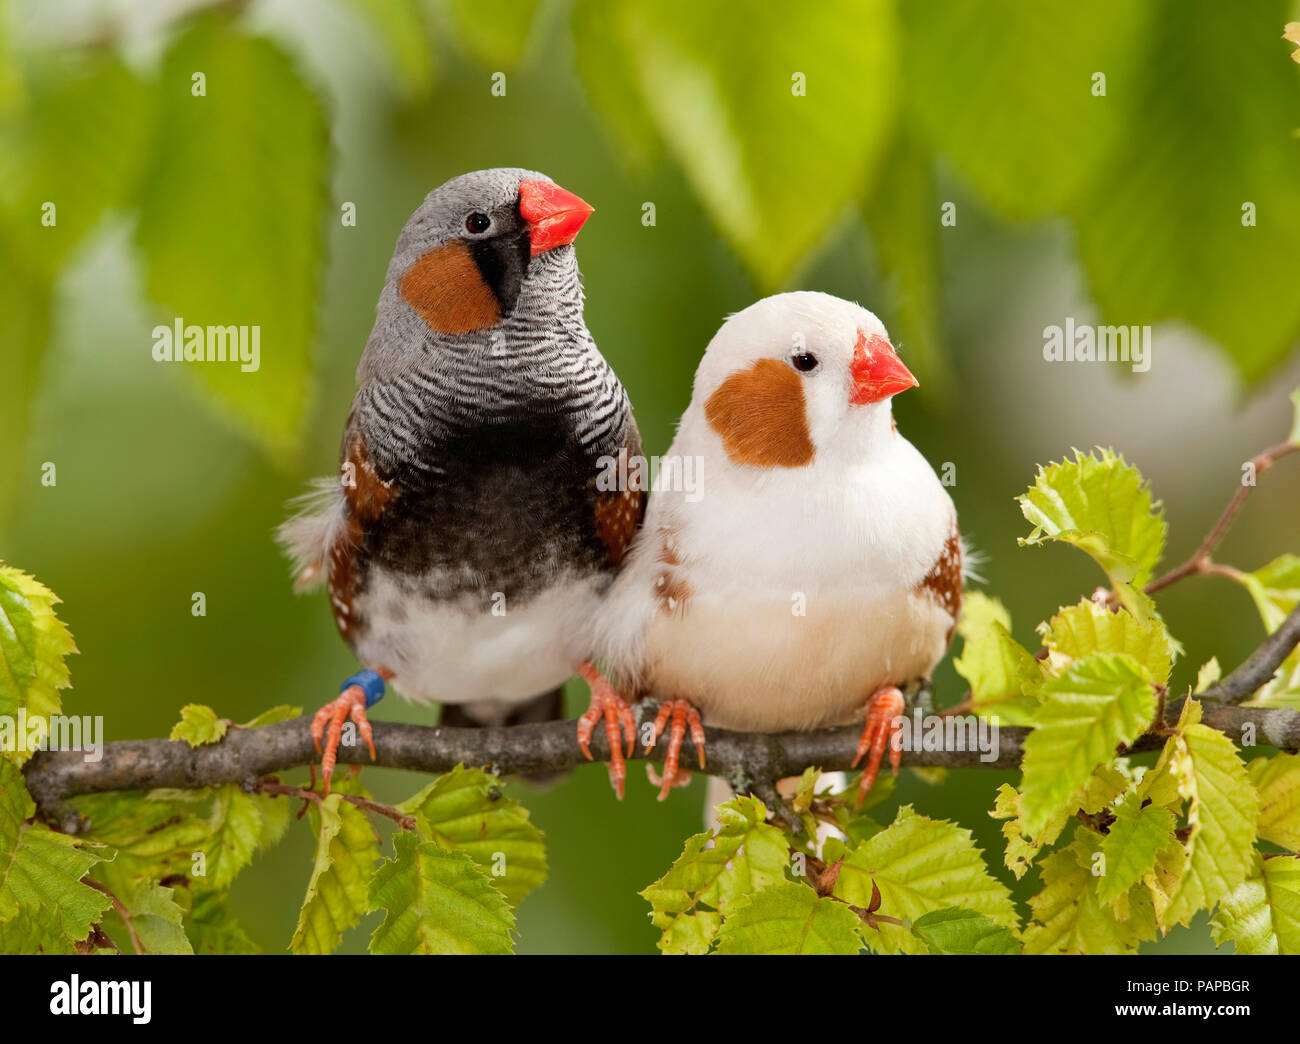 Diamant mandarin (Taeniopygia guttata). Deux oiseaux posés sur une branche. Allemagne Banque D'Images